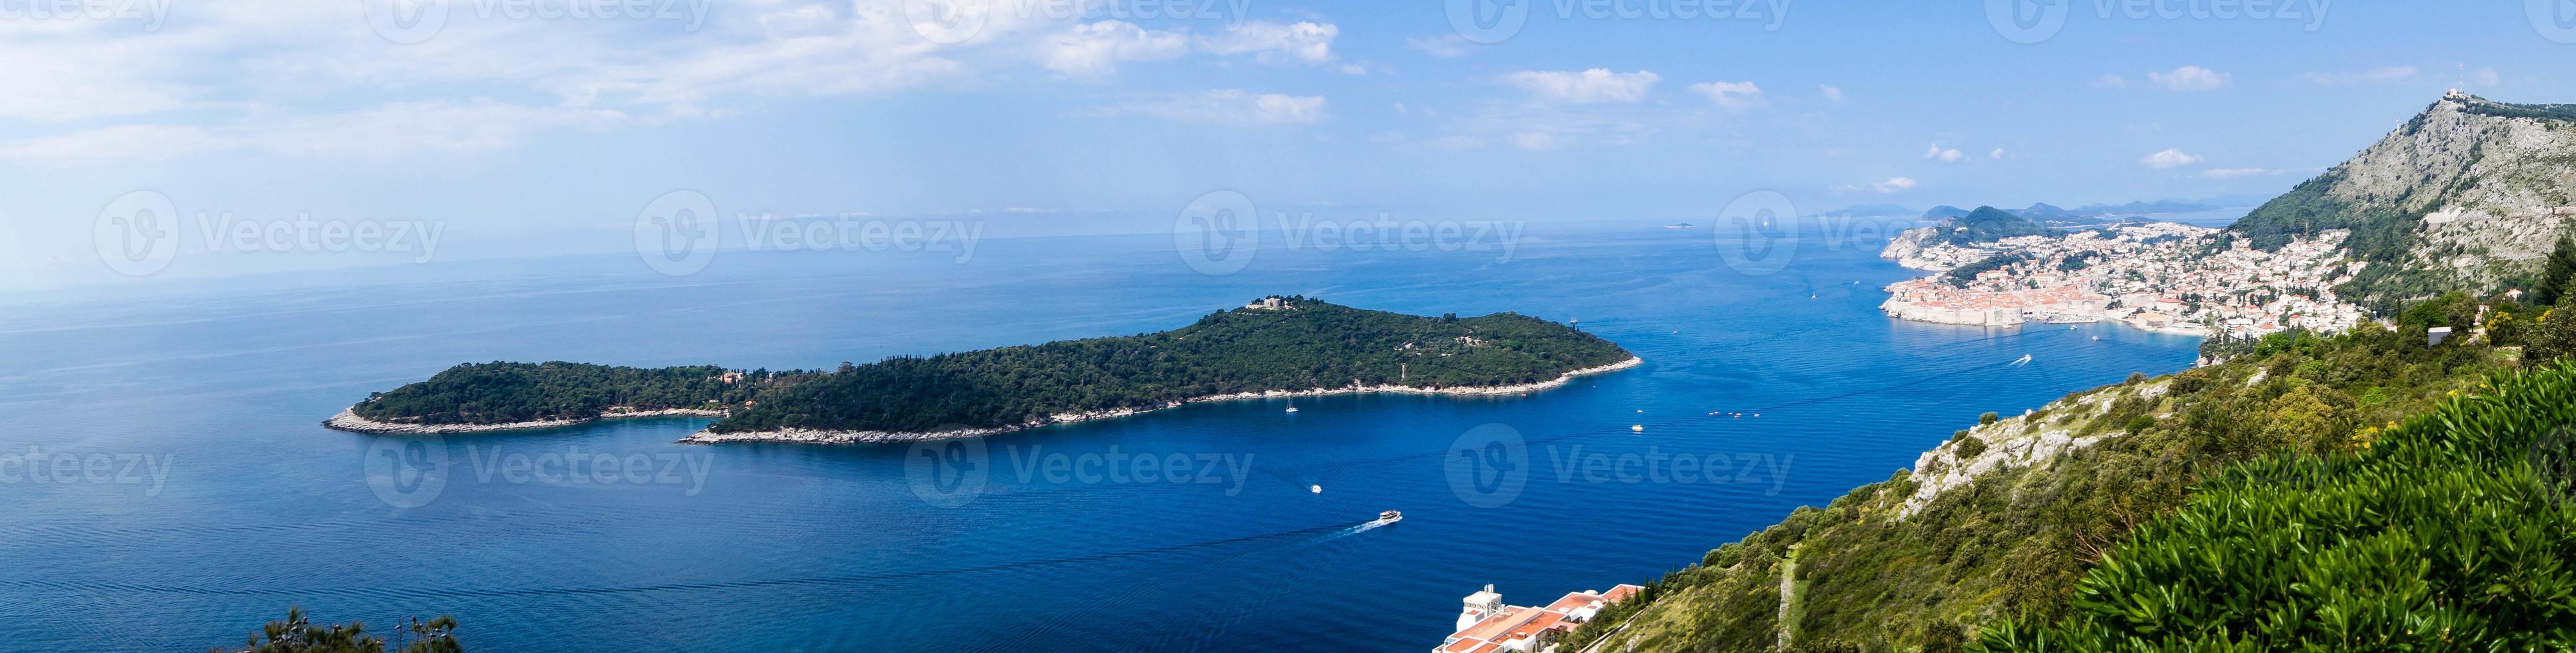 vue depuis le mont sdr sur otok lokrum, île près de dubrovnik croatie photo